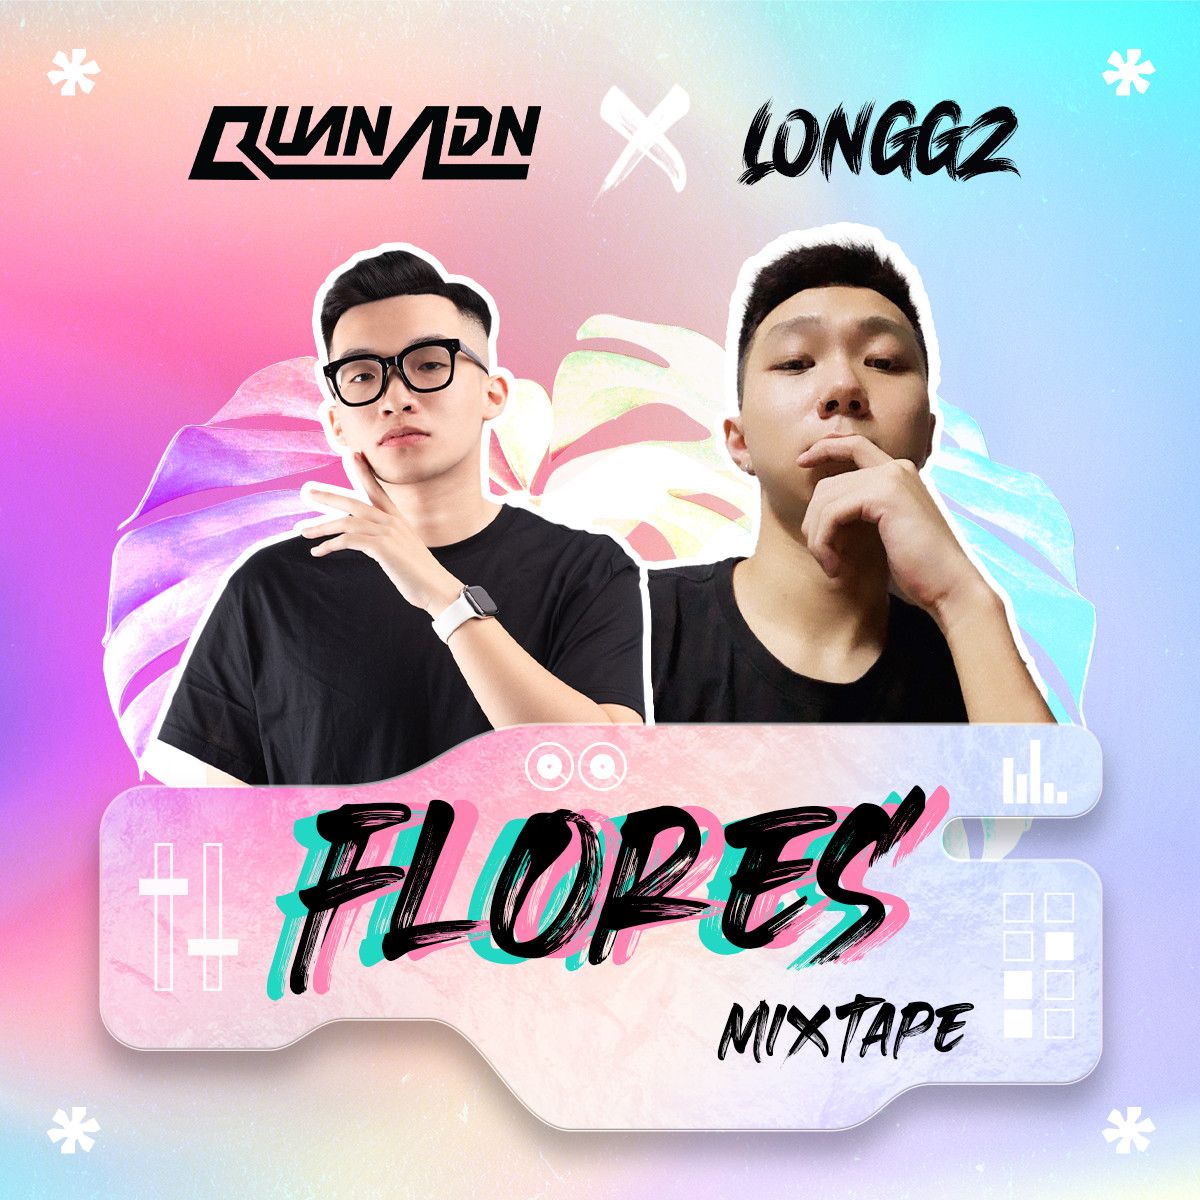 Niżżel Mixtape - Flores by Quan ADN & LONGGZ